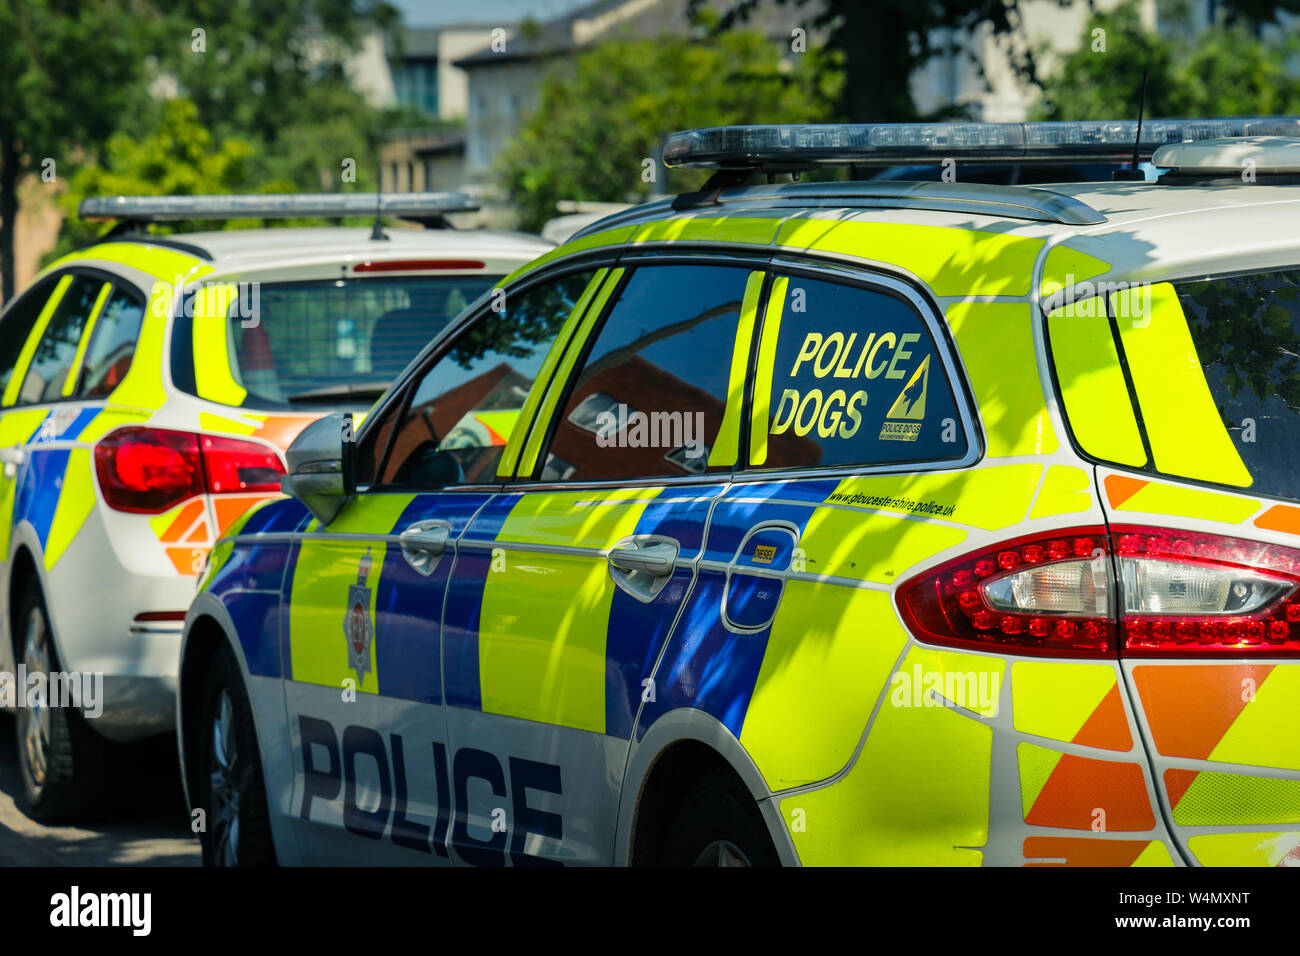 Deux voitures de police en stationnement, une unité d'un chien voiture stationnée dans l'ombre pommelé sur une chaude journée d'été Banque D'Images